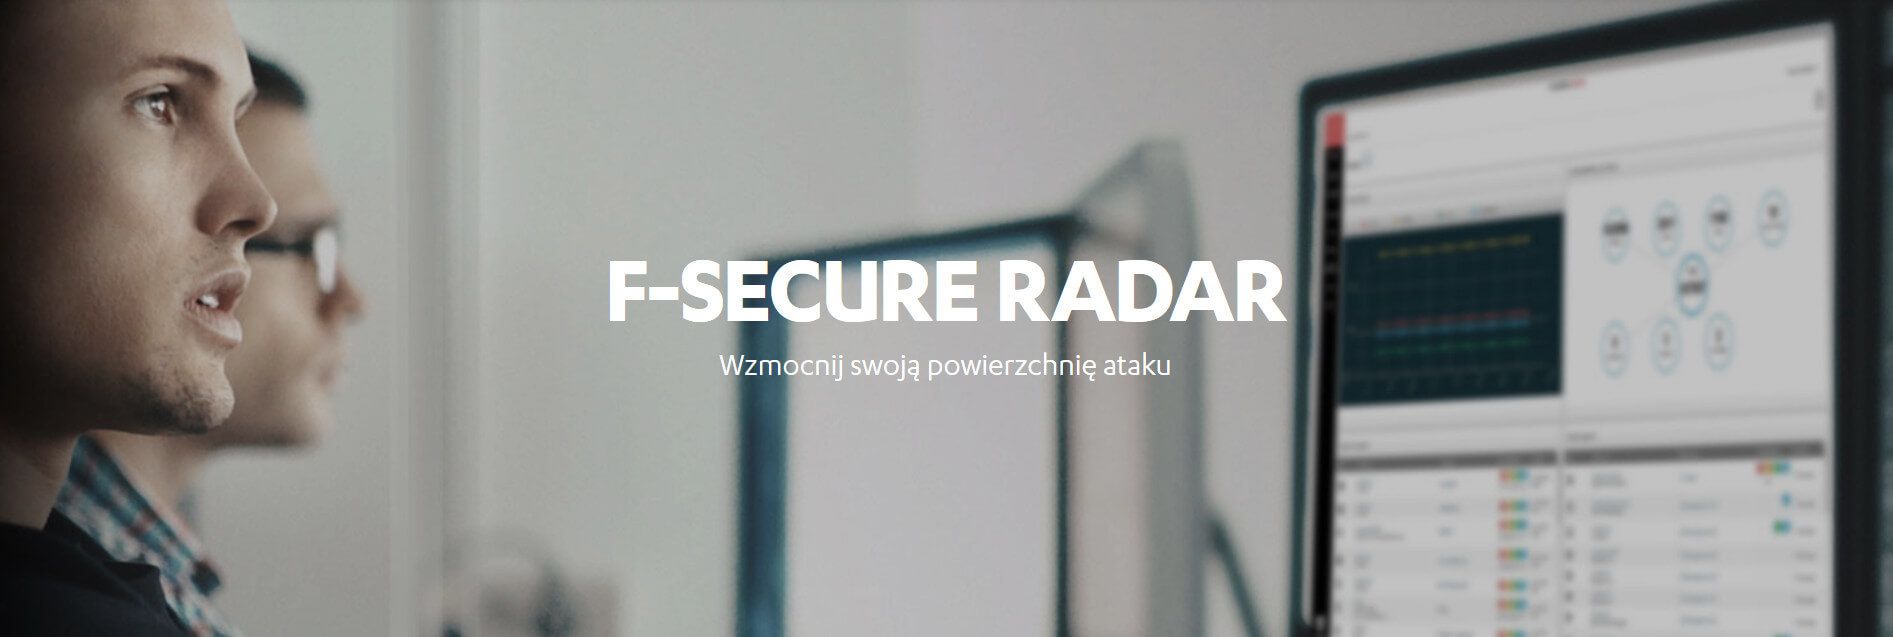 F-Secure RADAR - audyt bezpieczeństwa